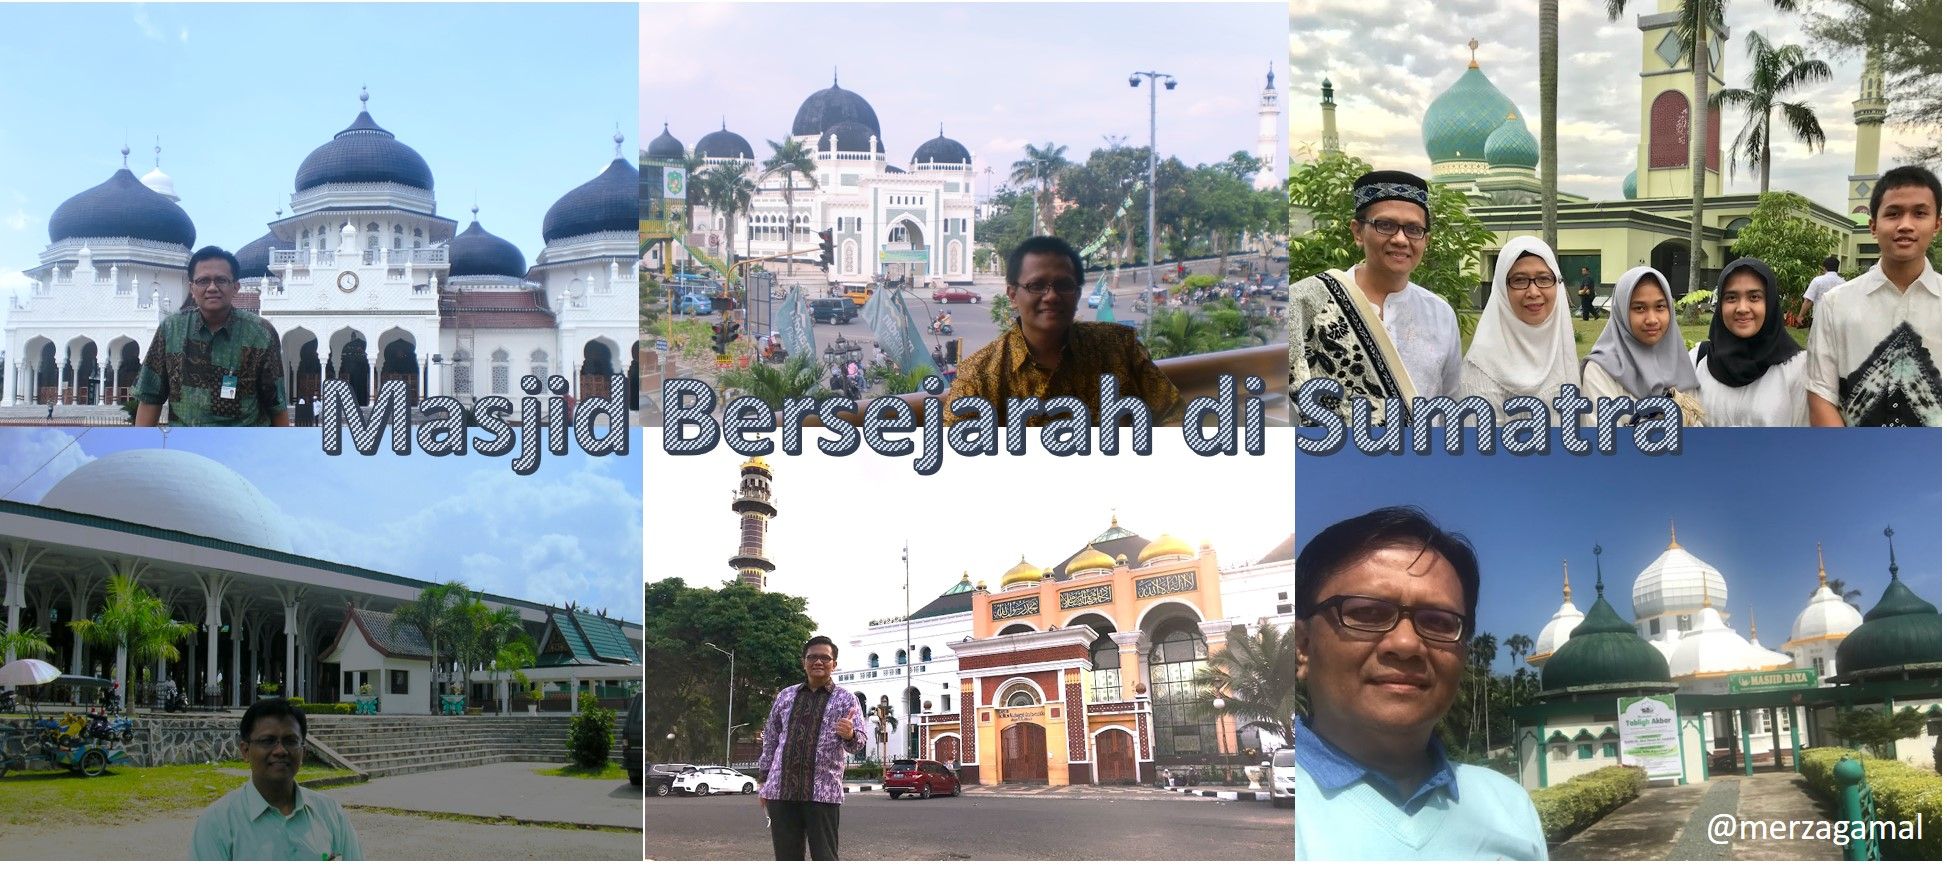 Minat Itikaf di Masjid-masjid Indah dan Bersejarah Sumatra?